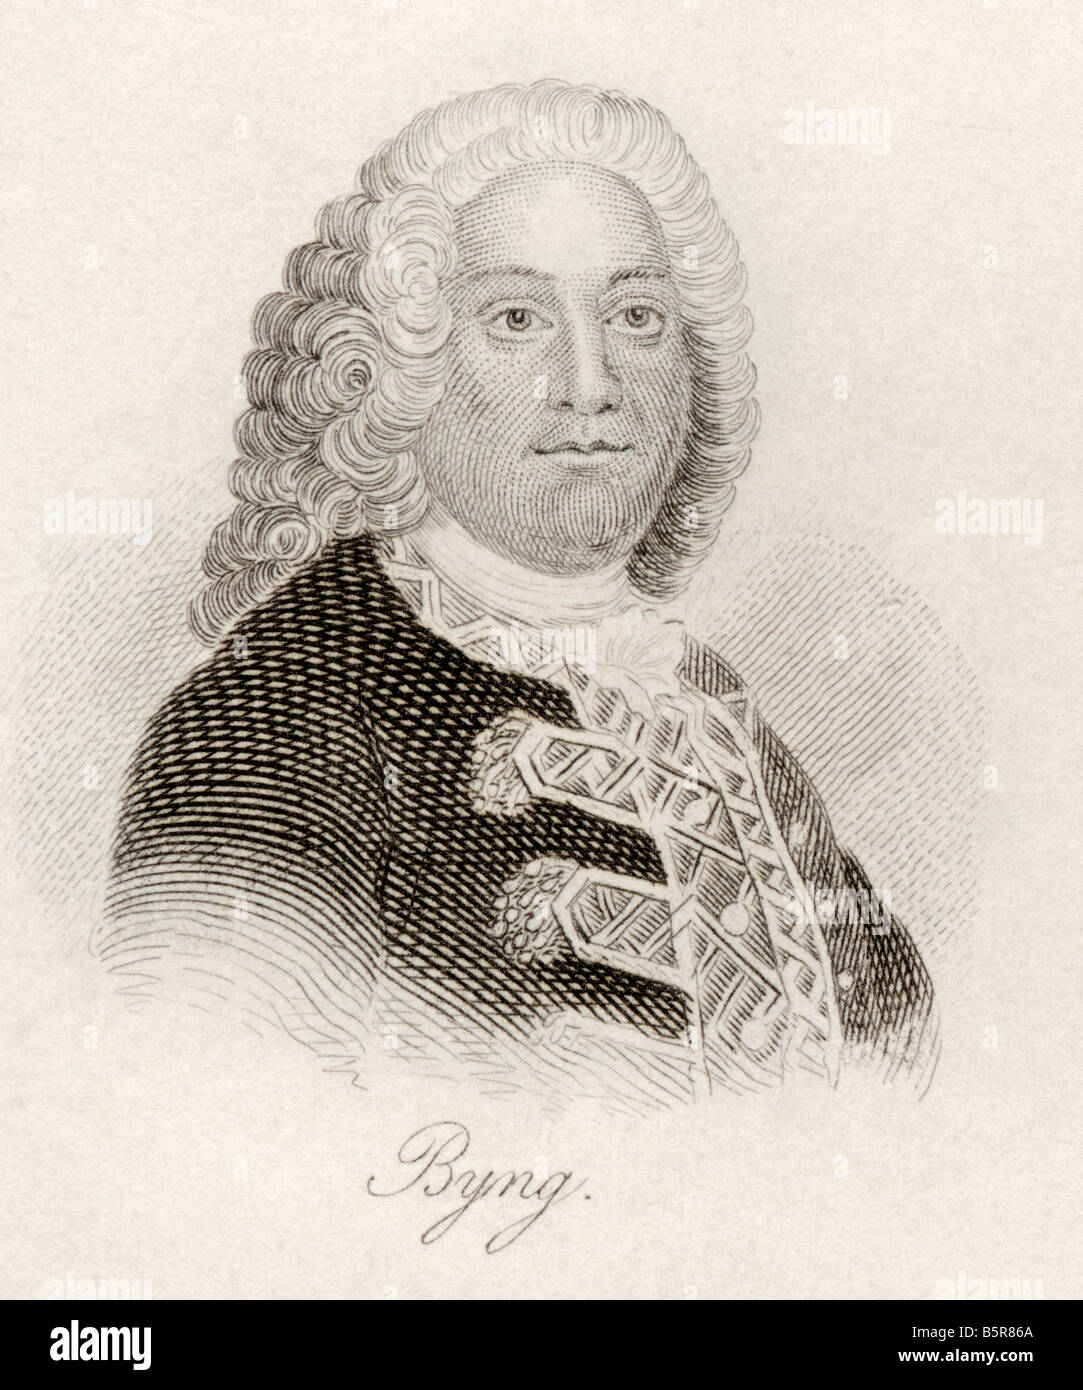 John Byng, 1704-1757. Amiral britannique. Extrait du livre Crabb's Historical Dictionary, publié en 1825. Banque D'Images